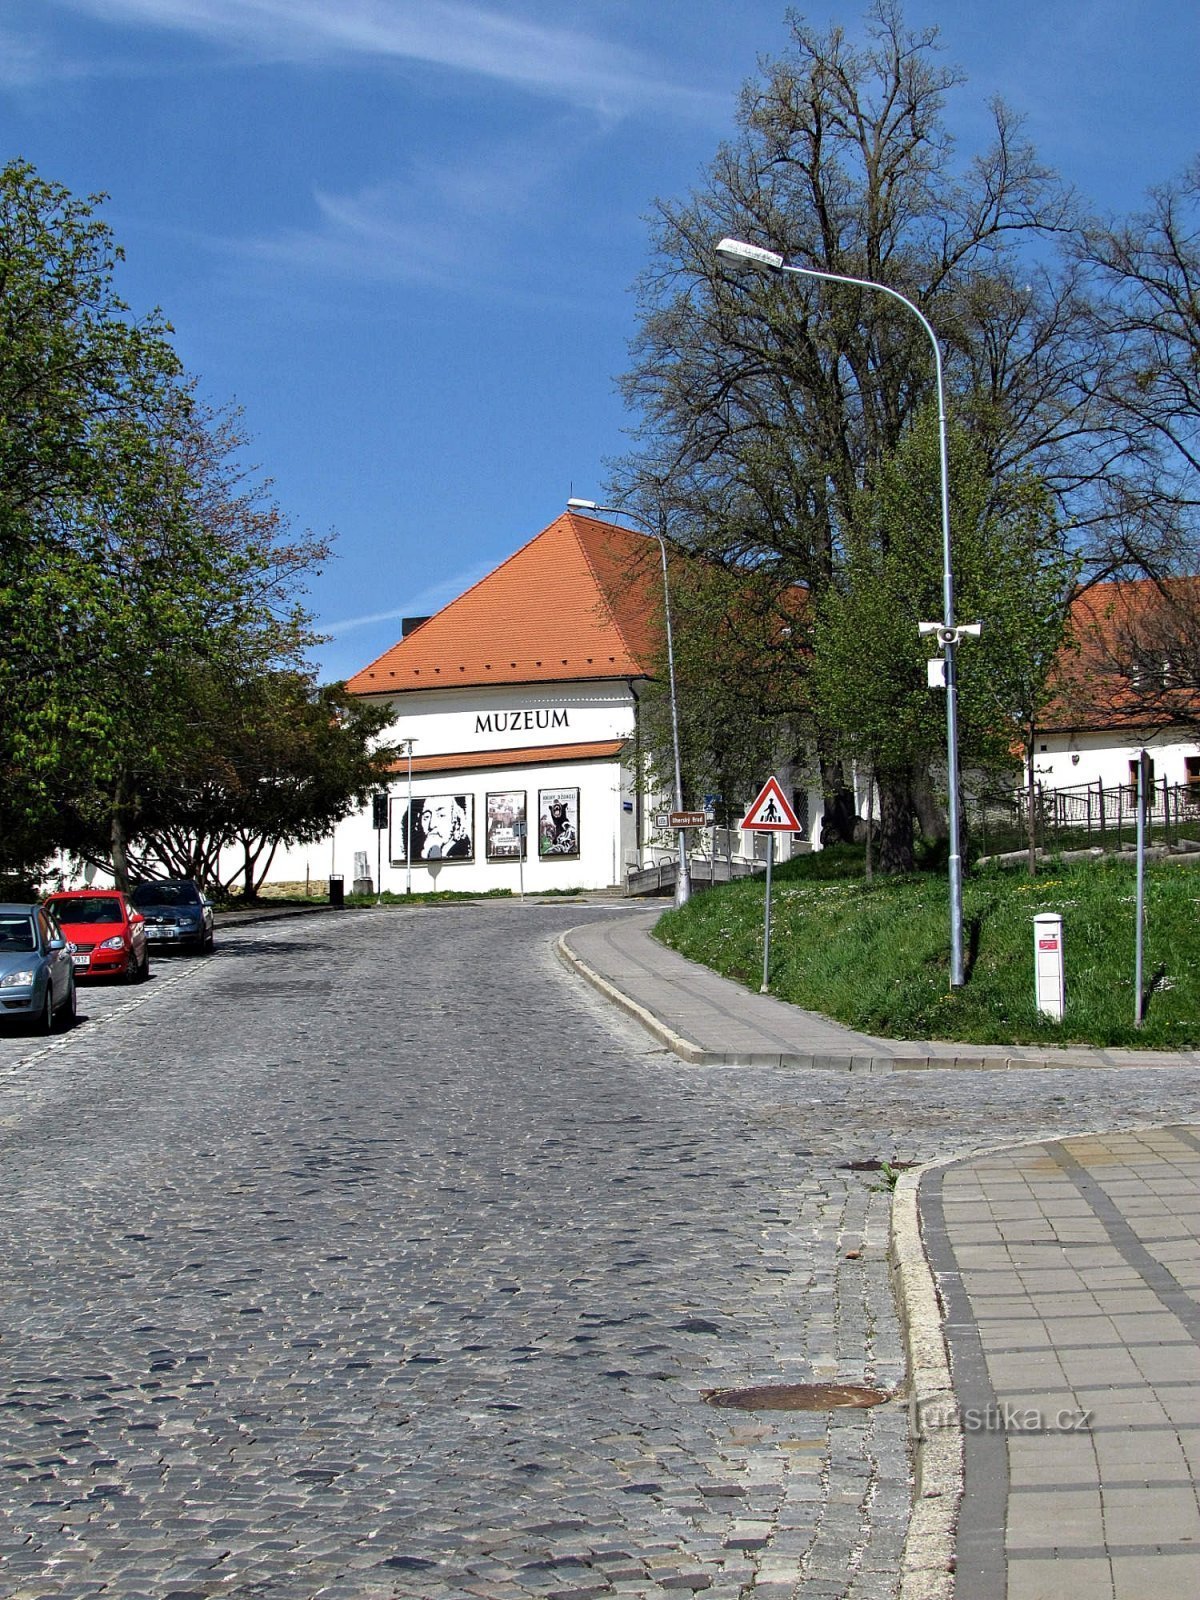 乌赫斯科布罗德城堡和博物馆